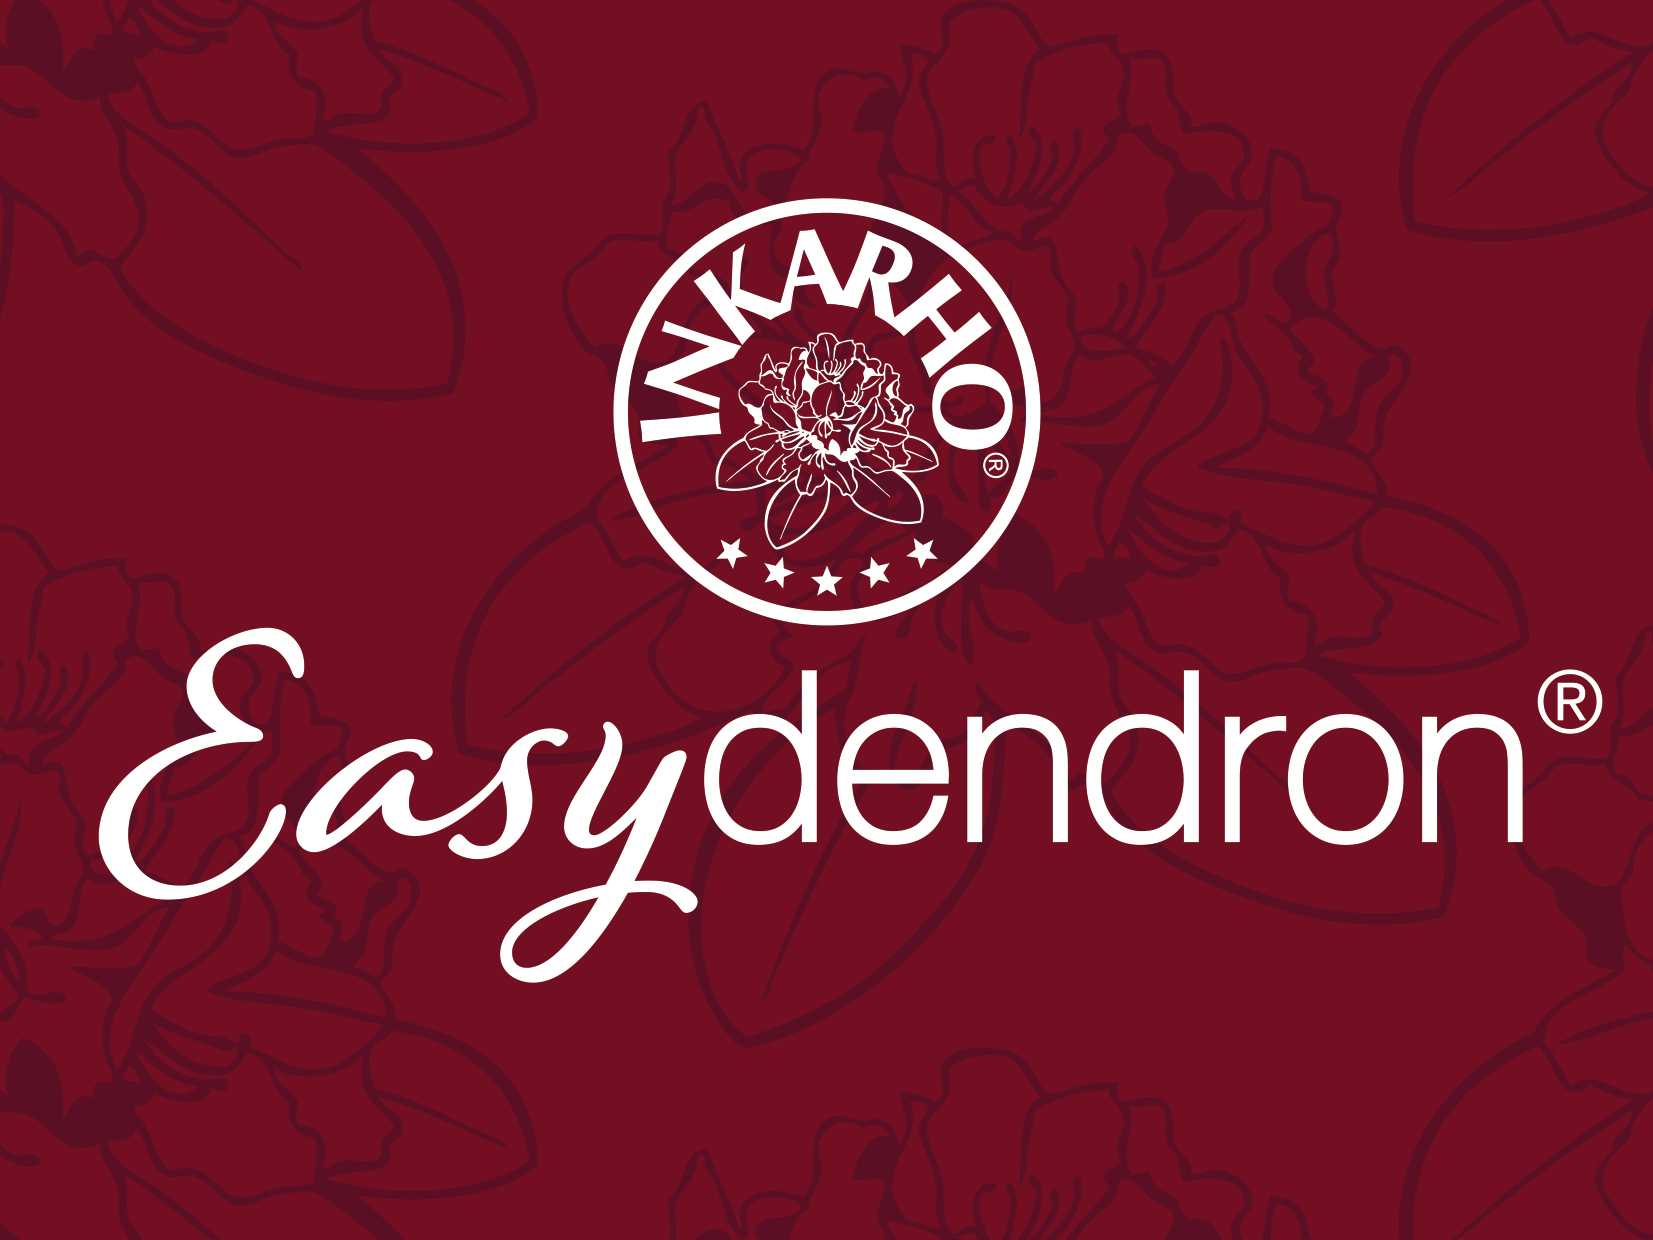 Easydendron Mærke logo